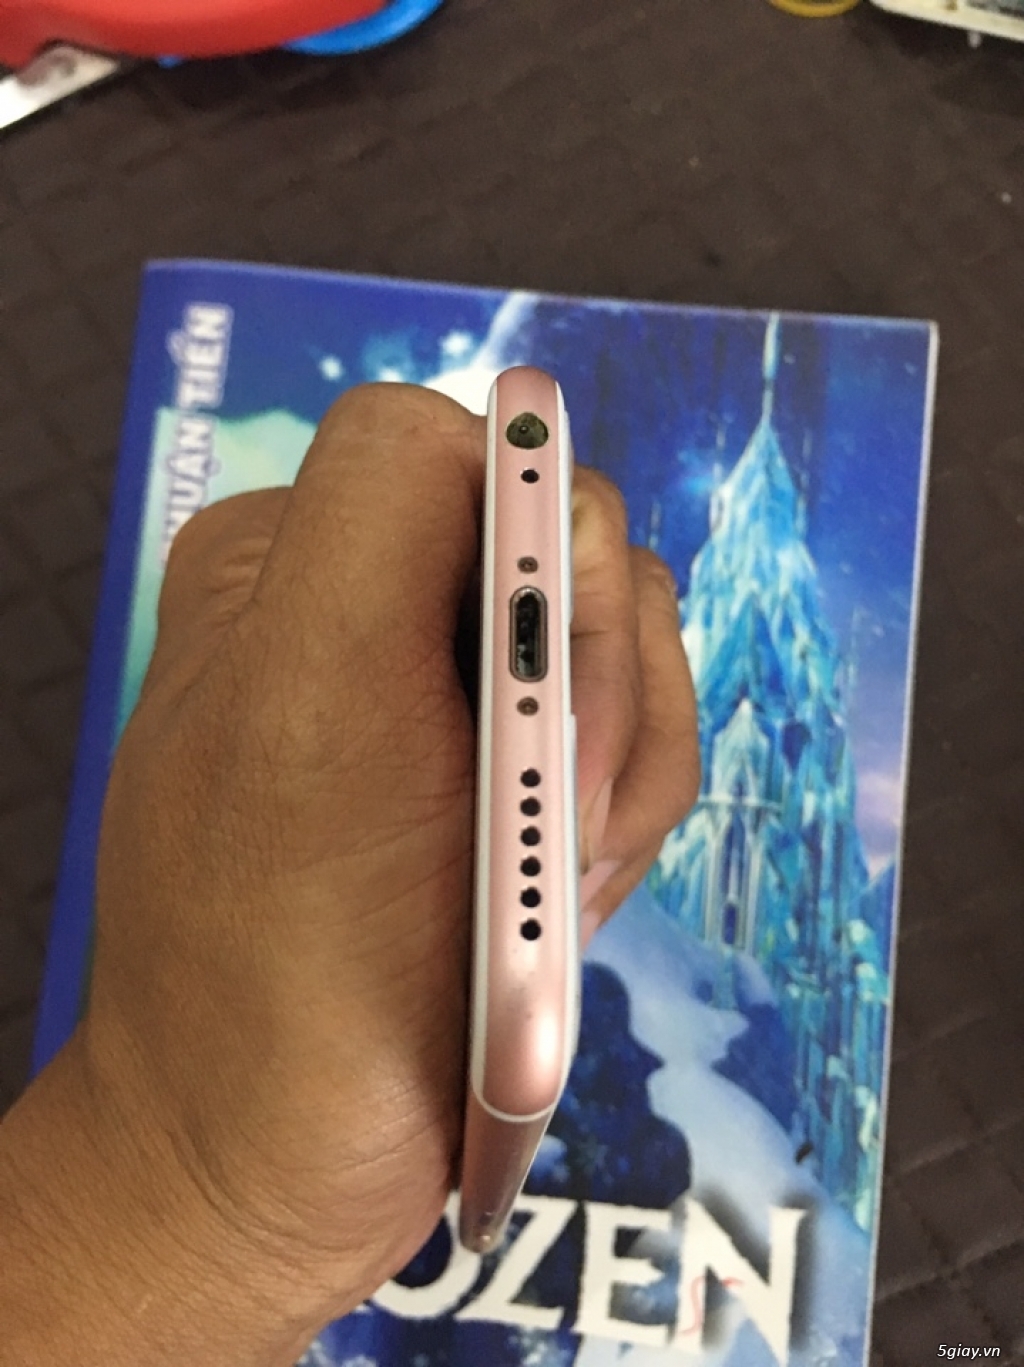 Bán iphone 6s 16gb vàng hồng QT máy mới 99% rất đẹp - 3